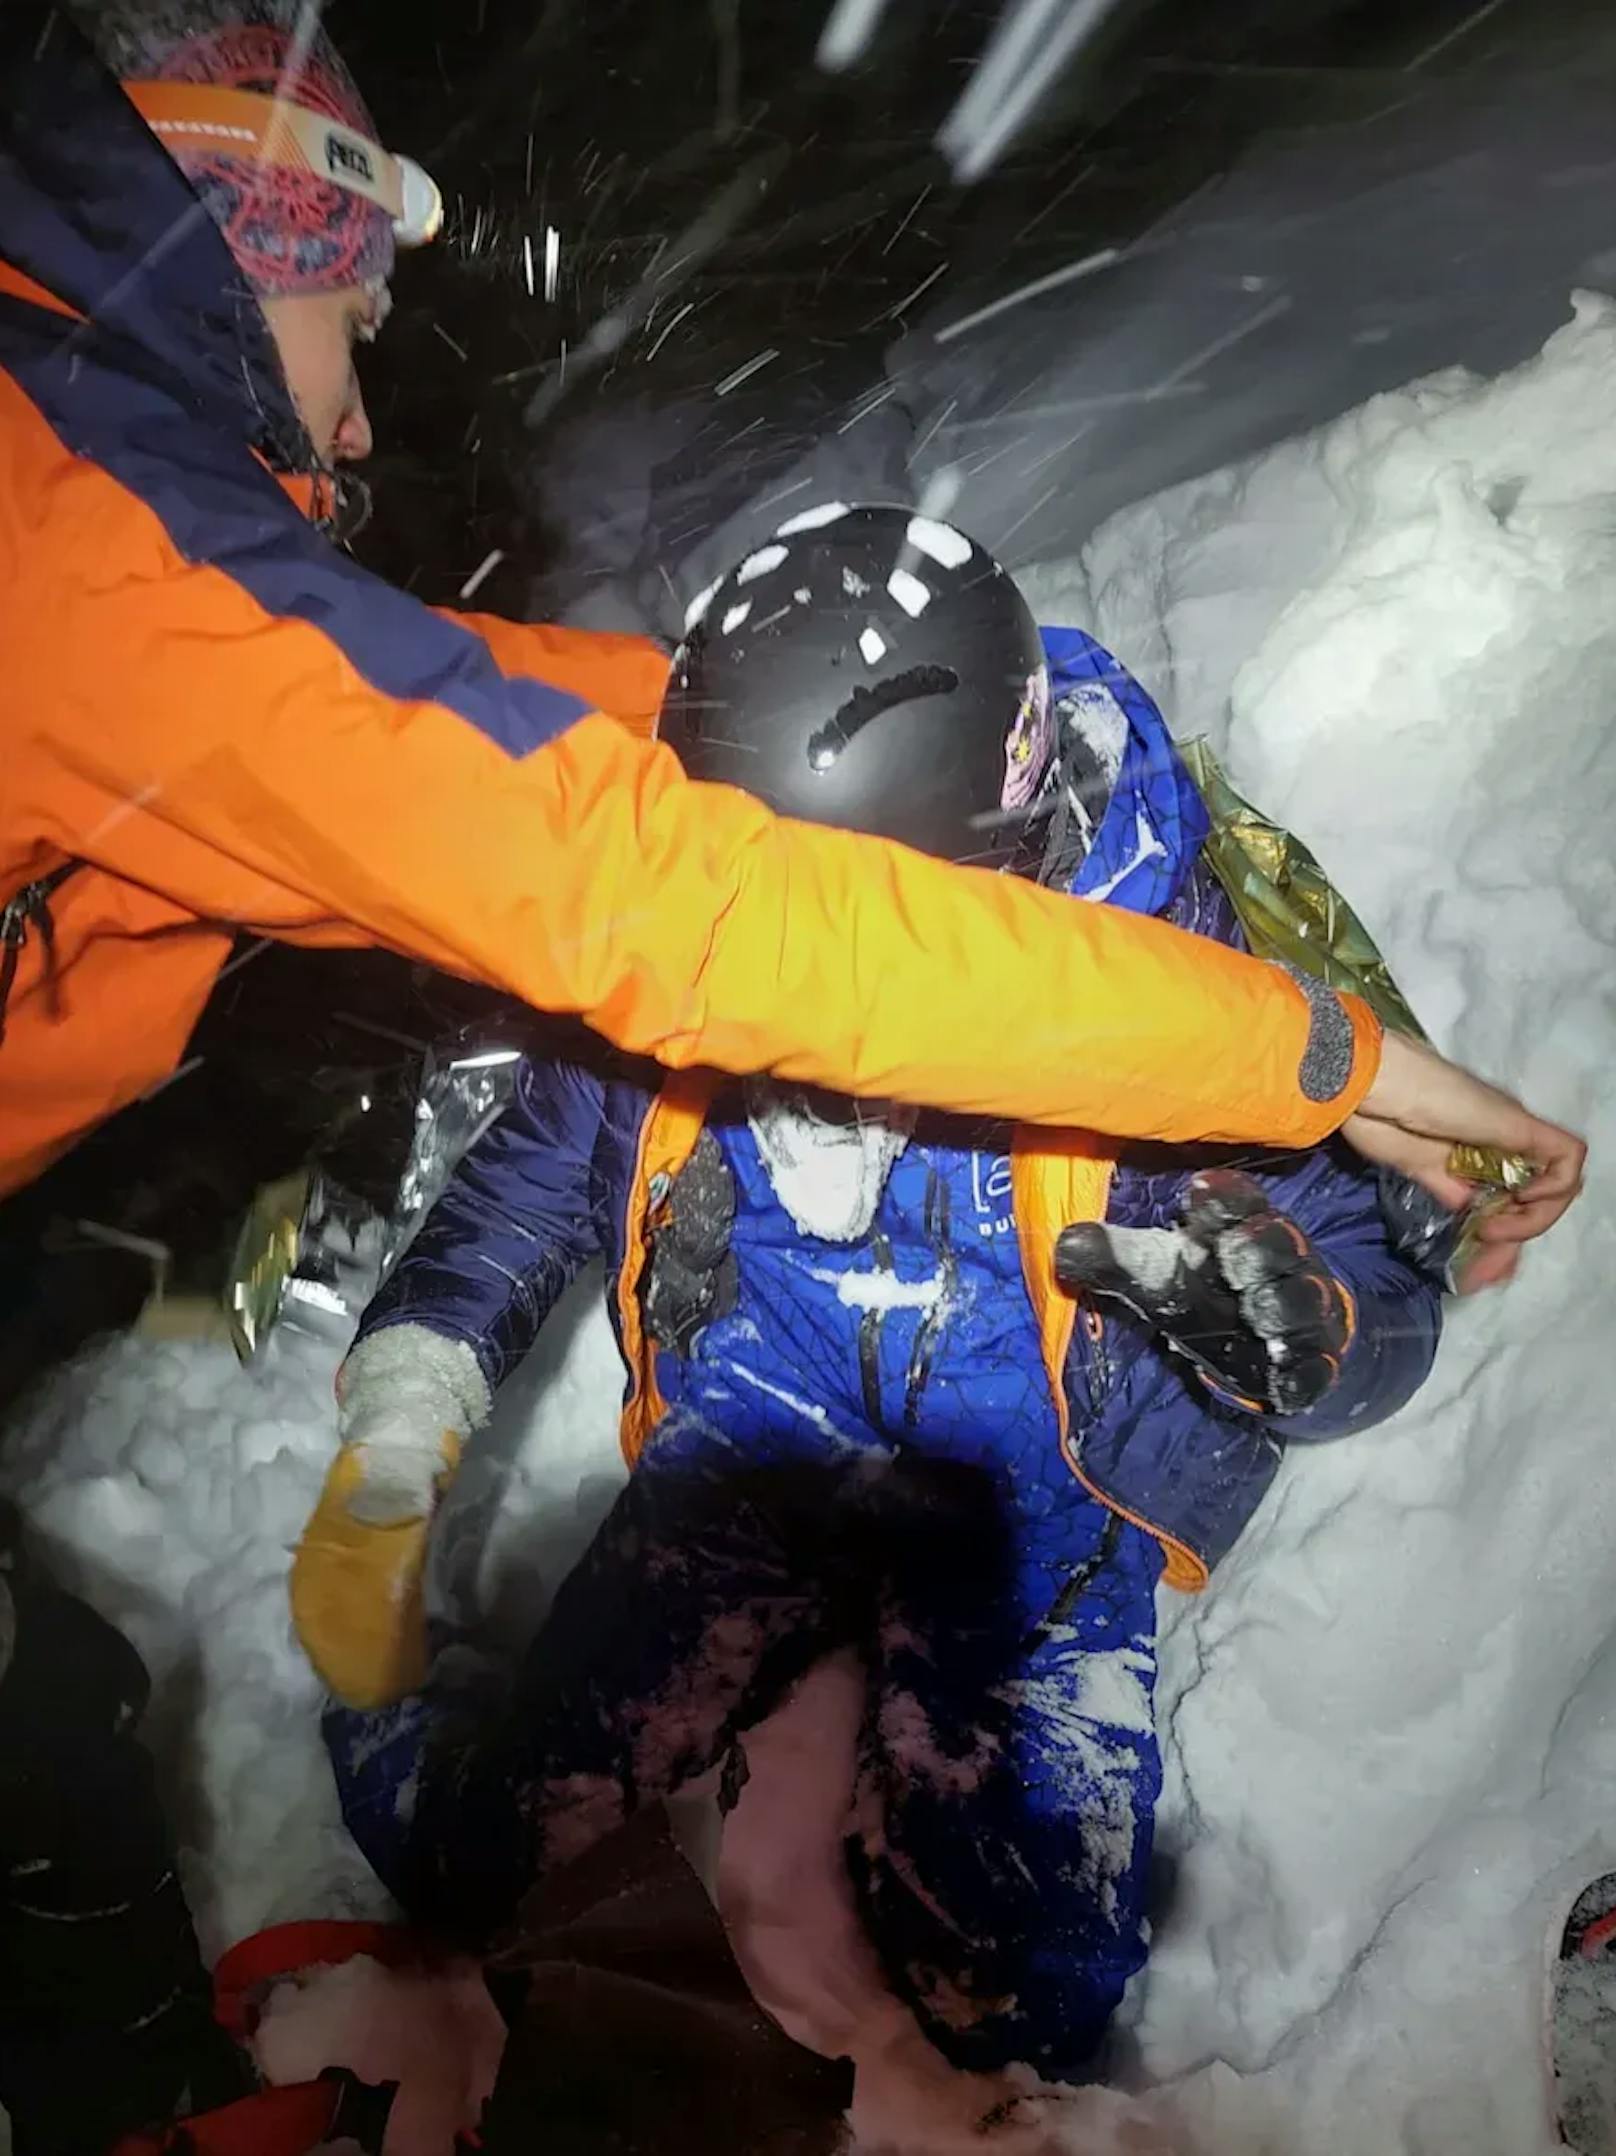 Mission geglückt: Nach zweistündiger Suche fanden die Retter den deutschen Alkohol-Snowboarder.